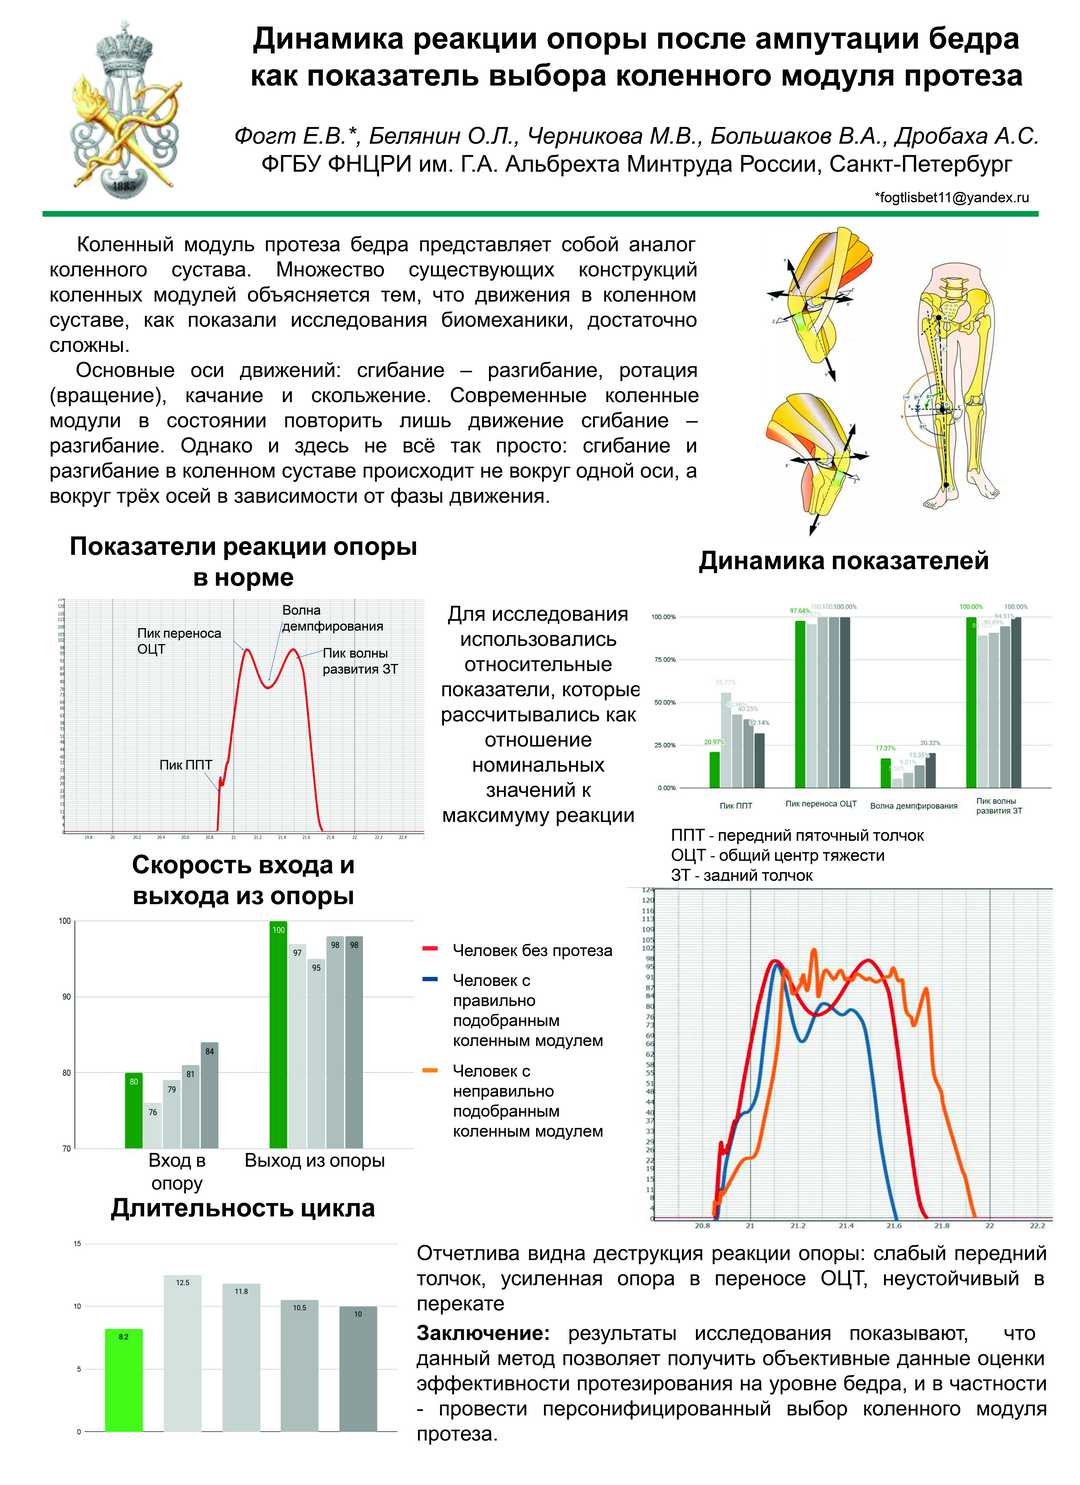 Динамика реакции опоры после ампутации бедра как показатель выбора коленного модуля протеза